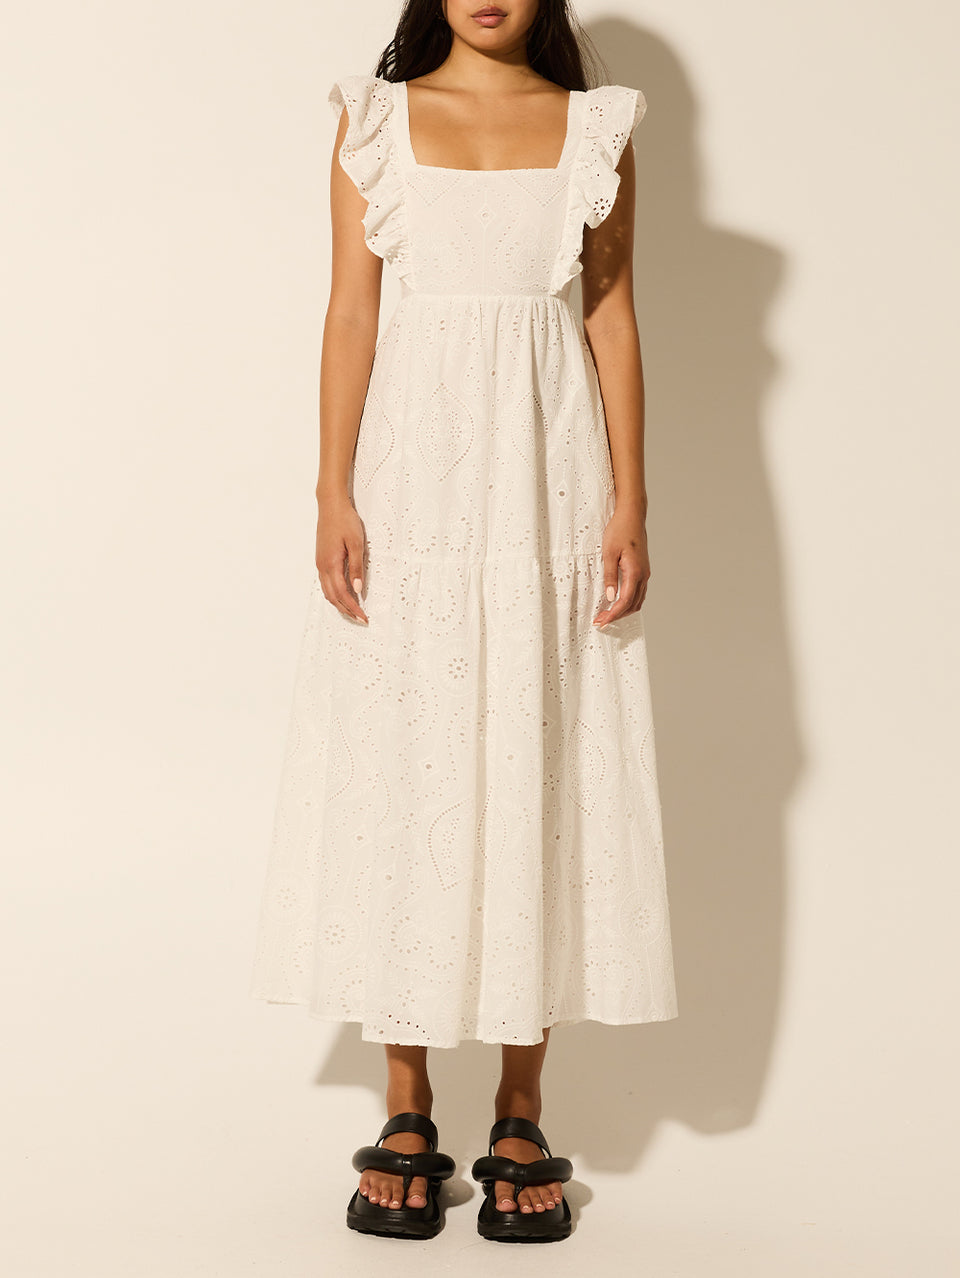 Clove Midi Dress KIVARI | Model wears white embroidered midi dress 